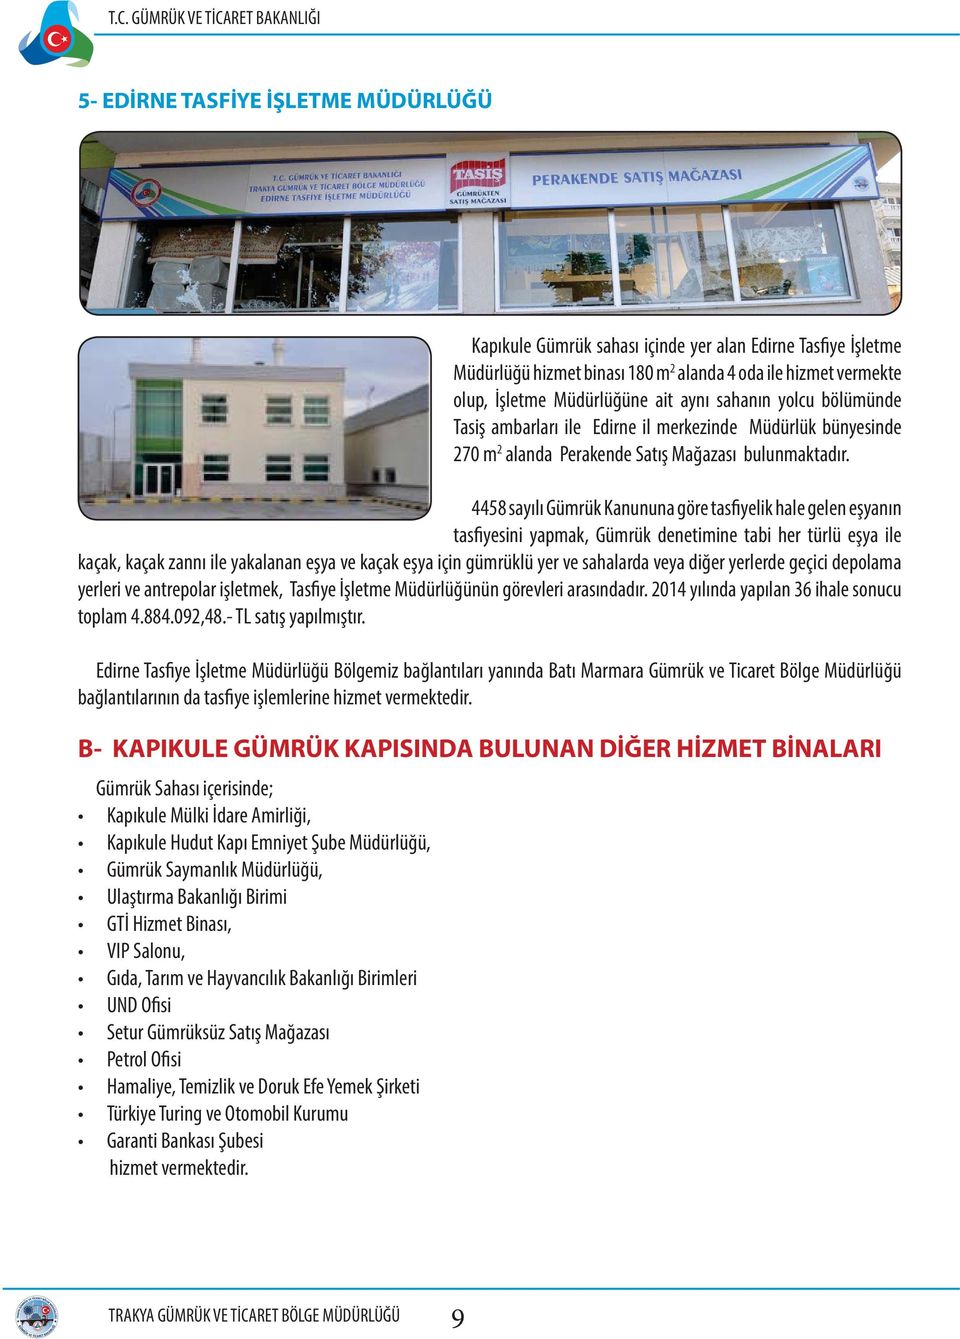 Temizlik ve Doruk Efe Yemek Şirketi Türkiye Turing ve Otomobil Kurumu Garanti Bankası Şubesi hizmet vermektedir.